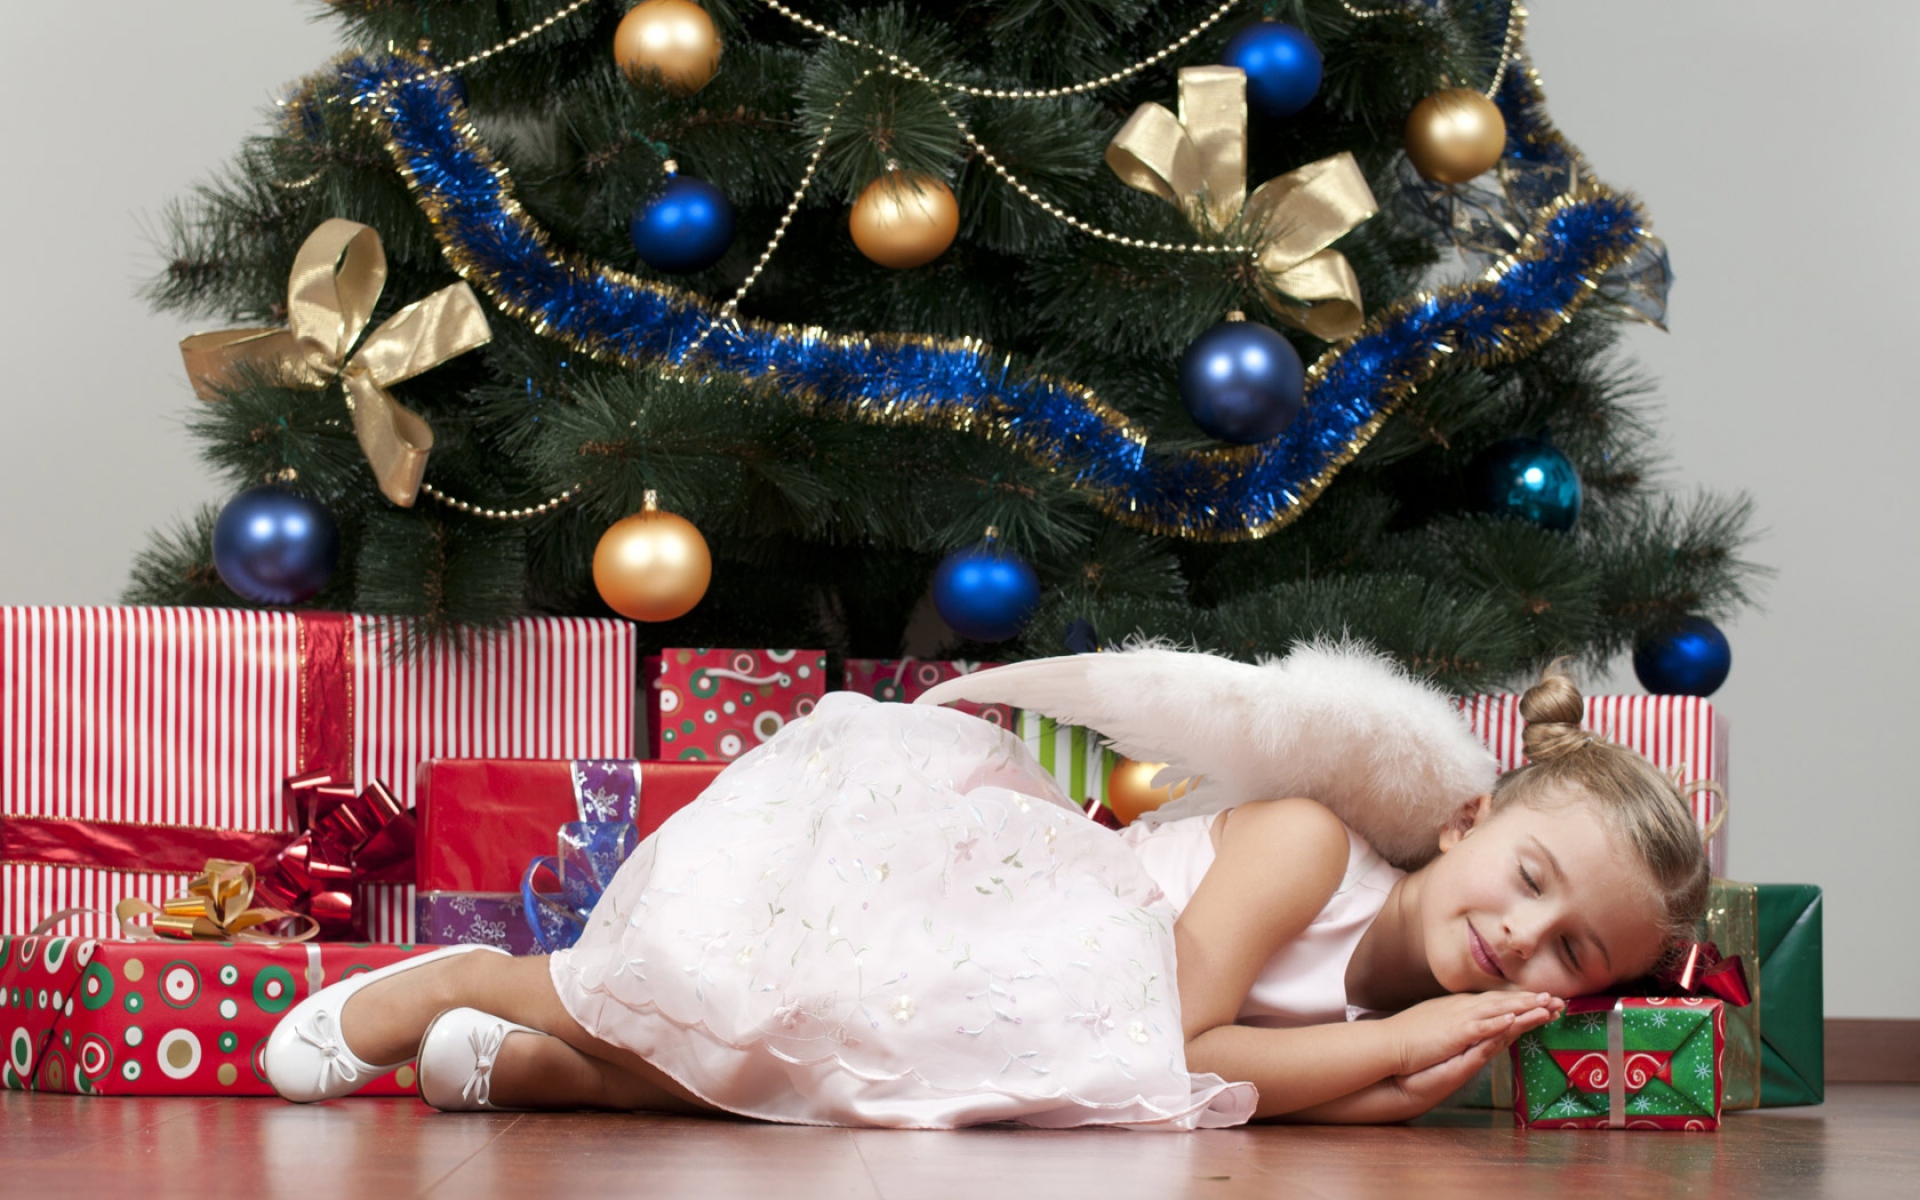 Жду деда мороза с подарками. Дети под елкой. Подарки под ёлкой. Девочка под елкой. Новогоднее чудо.